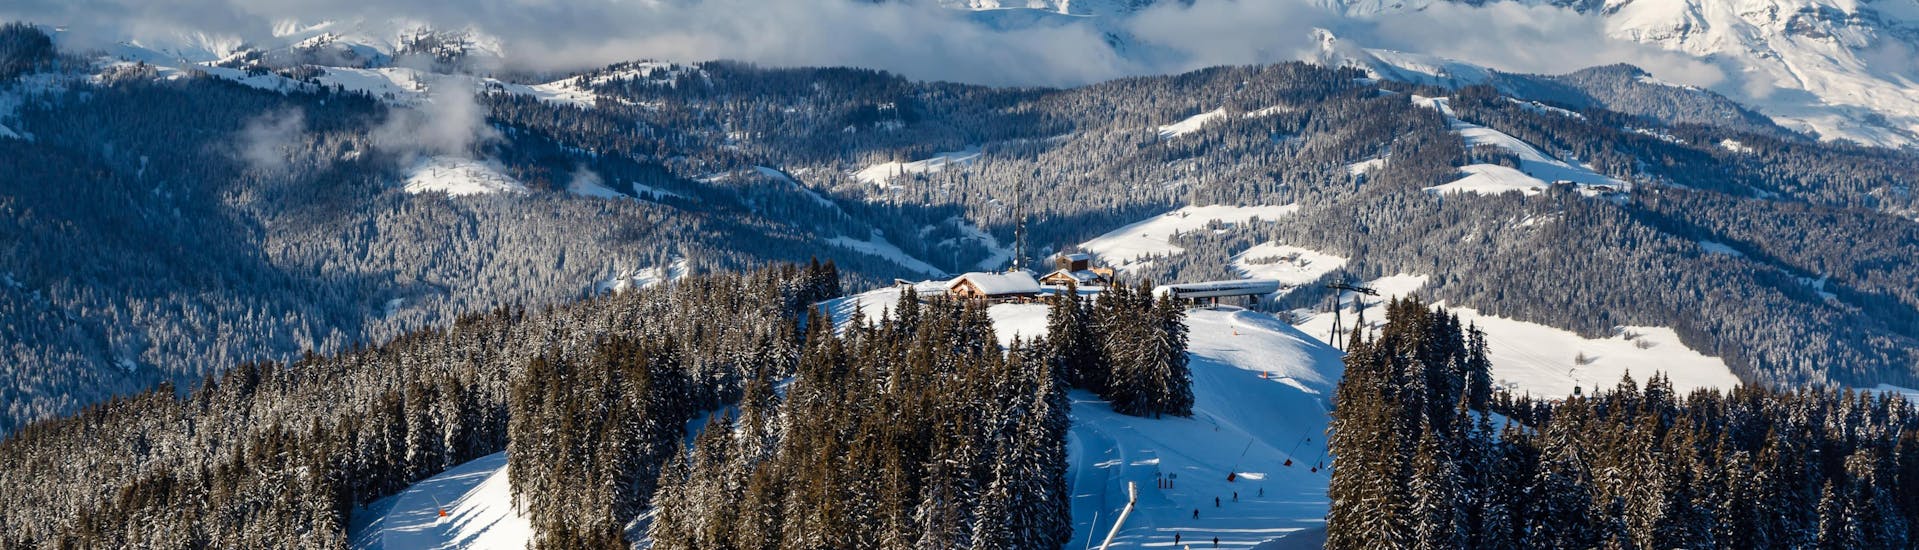 Vue des pistes de la station de ski française de Megève où les écoles de ski locales offrent un large éventail de cours de ski à ceux qui veulent apprendre à skier.